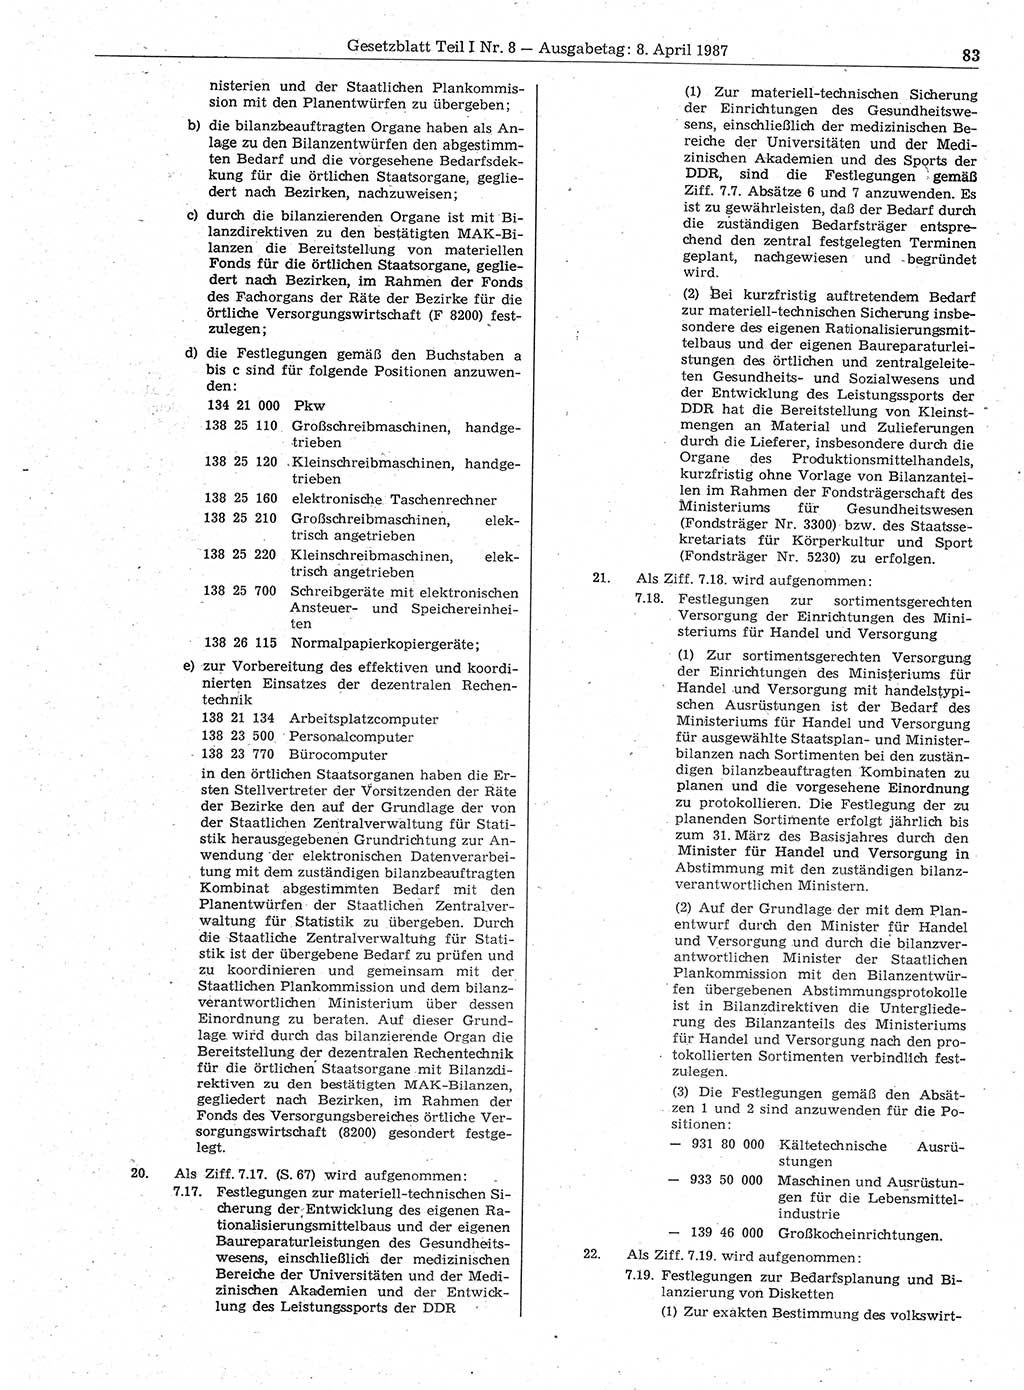 Gesetzblatt (GBl.) der Deutschen Demokratischen Republik (DDR) Teil Ⅰ 1987, Seite 83 (GBl. DDR Ⅰ 1987, S. 83)